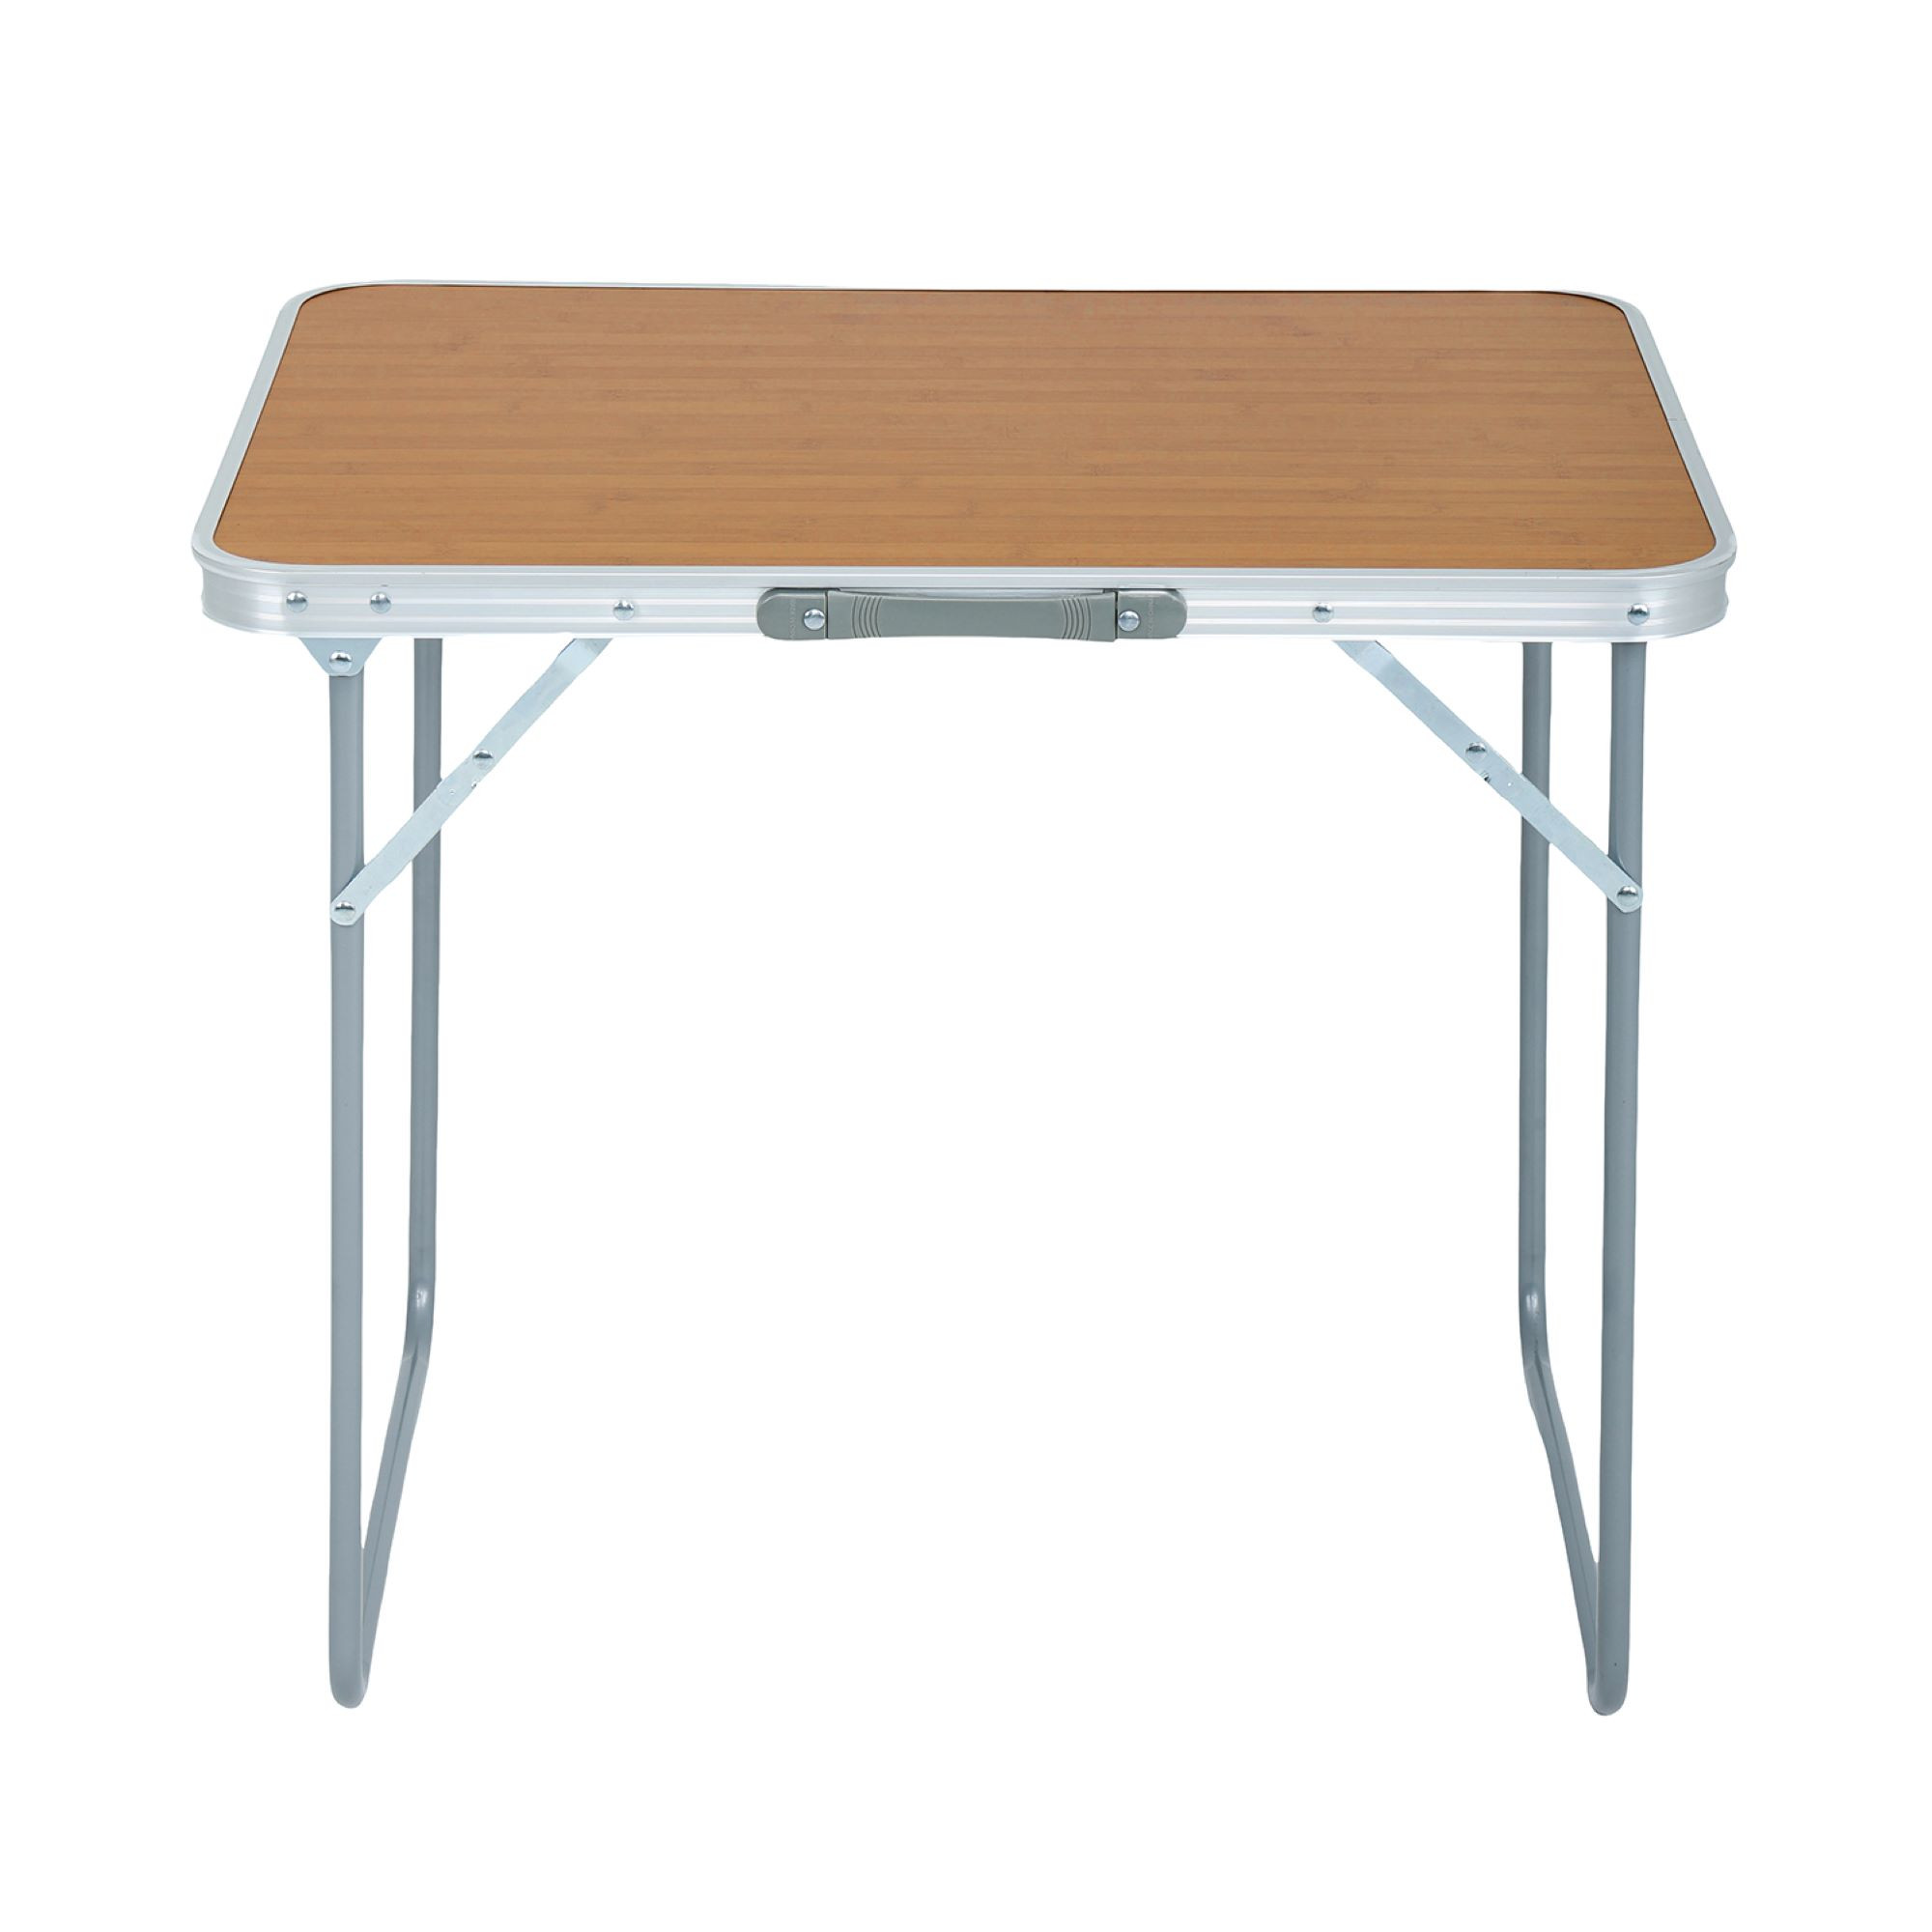 Składany stolik kempingowy ARES z aluminium o wyglądzie drewna wymiary 70x60x50 cm - AKORD Fabryka Mebli